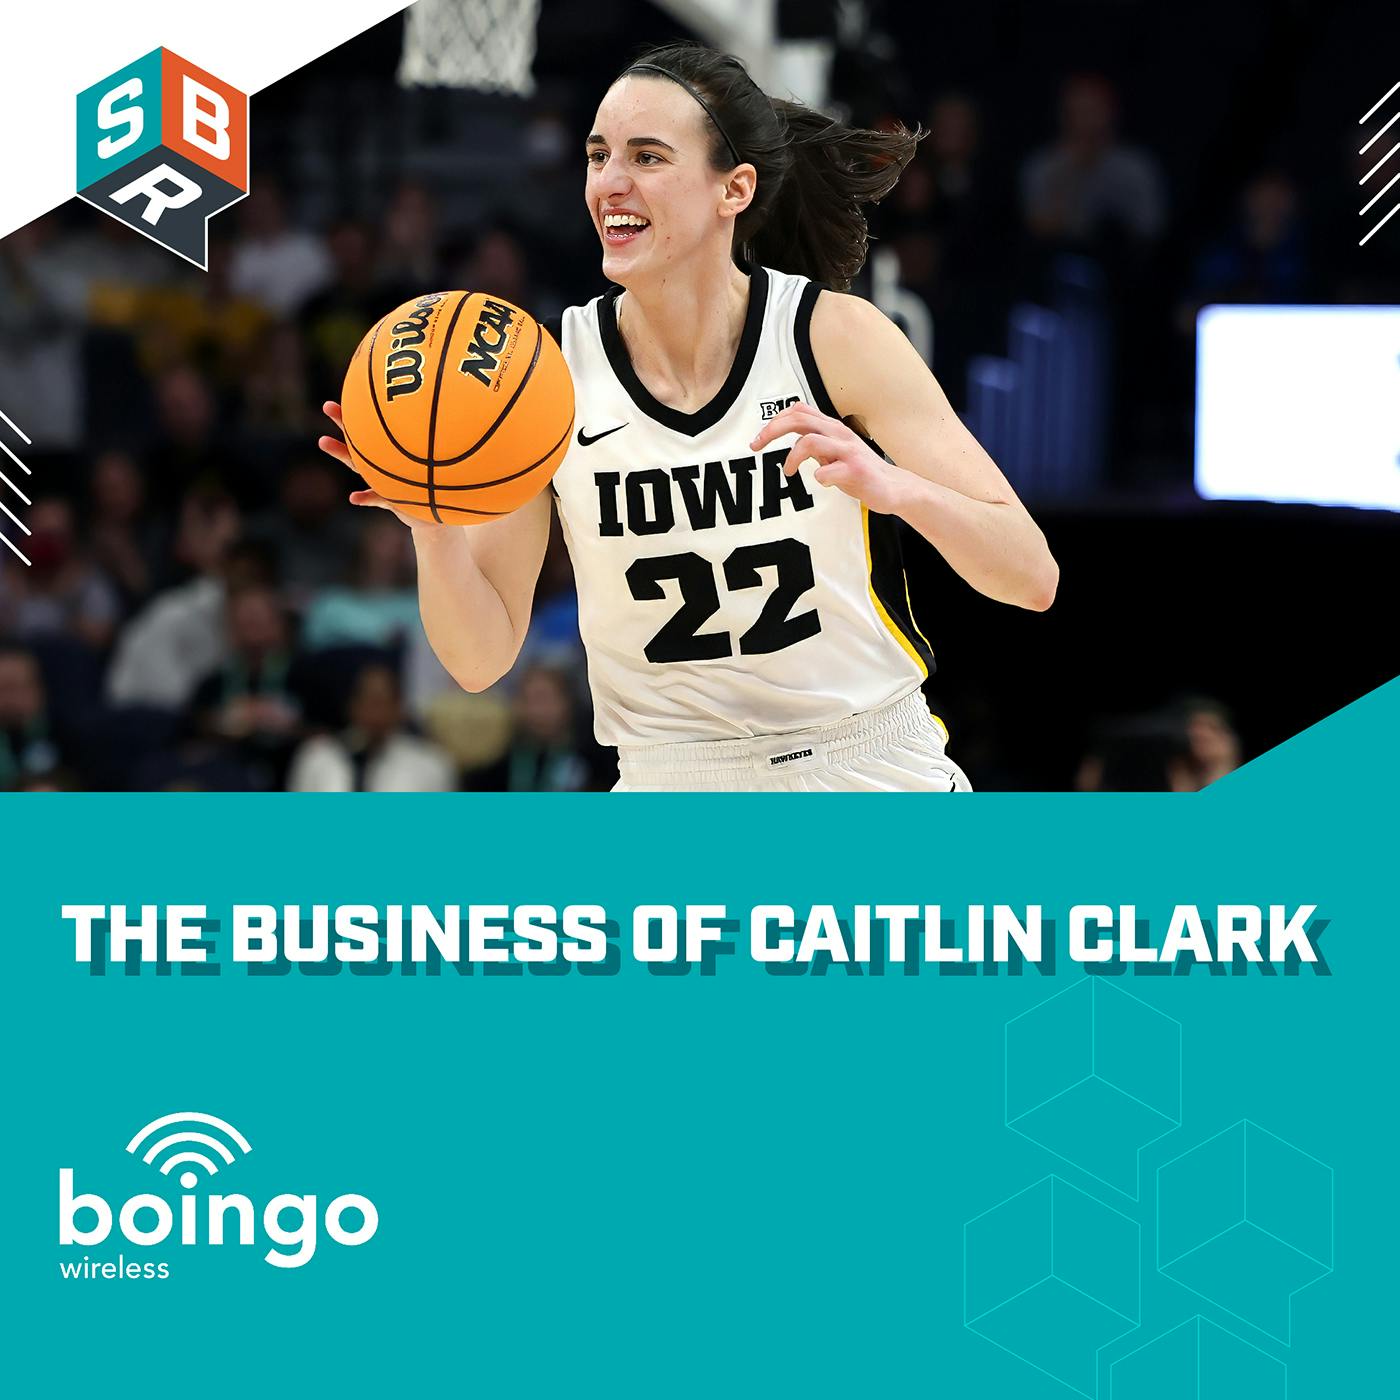 The Business of Caitlin Clark